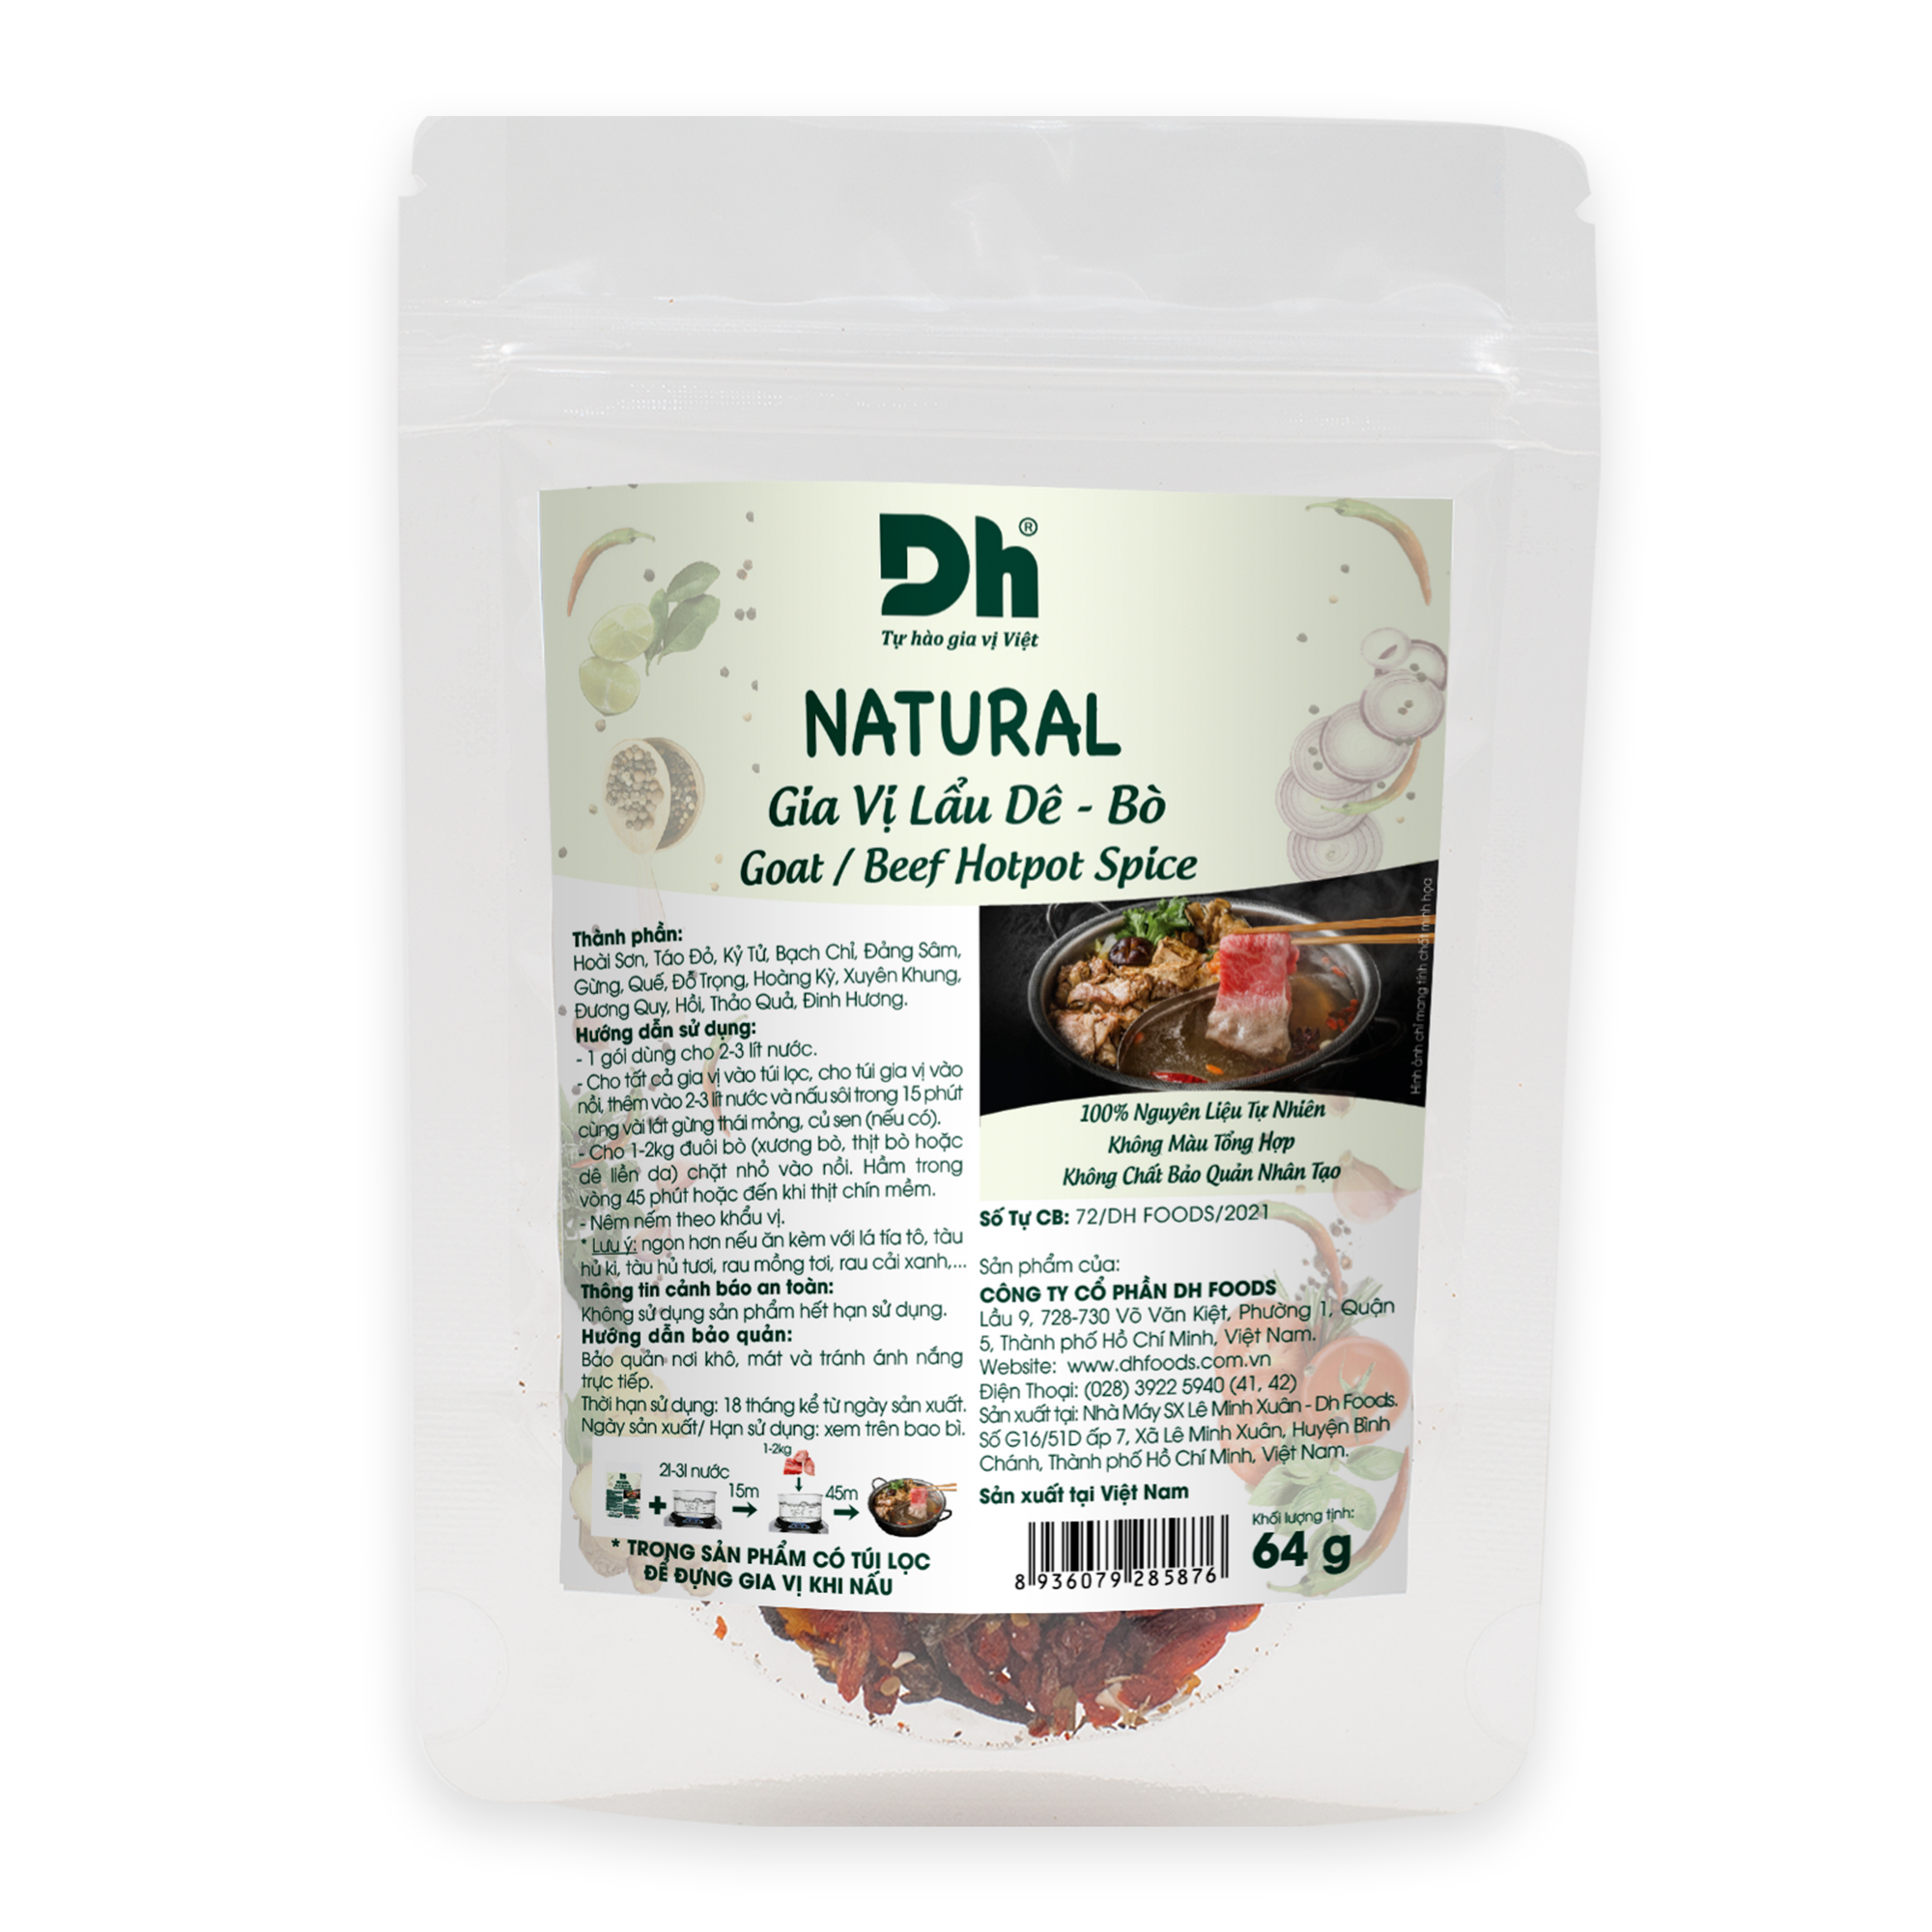 Natural Gia Vị Lẩu Dê - Bò Dh Foods